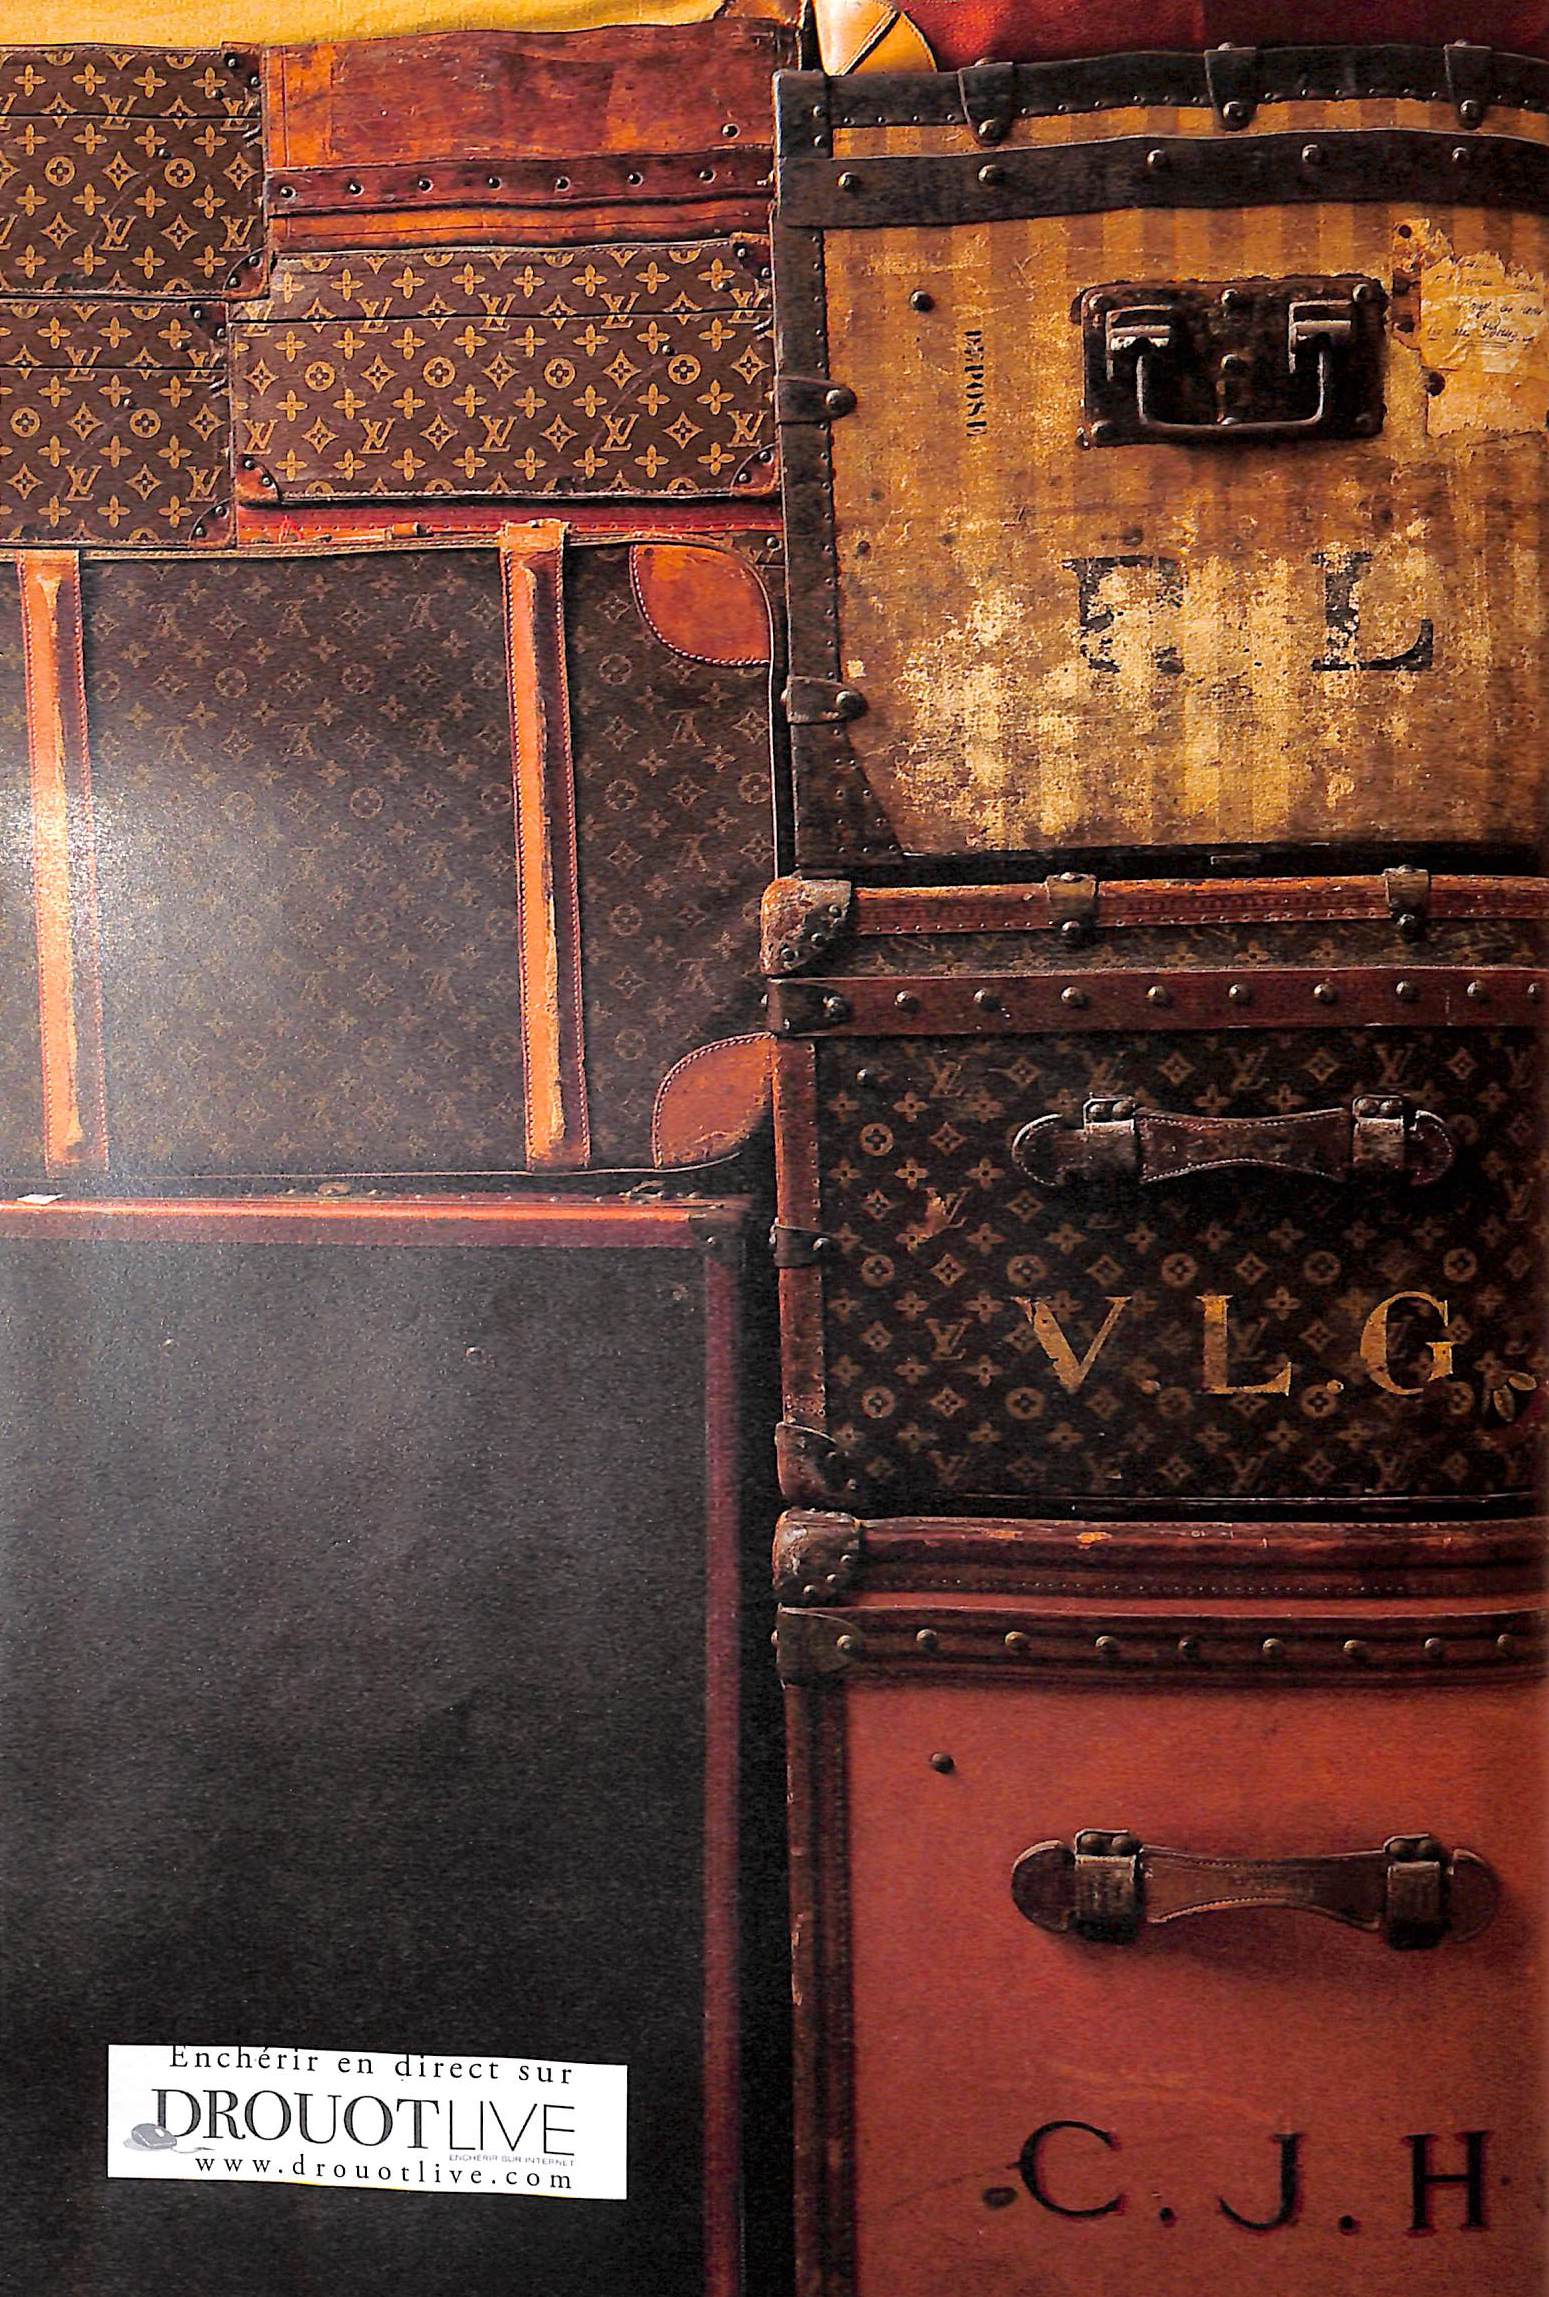 Louis Vuitton Rare Collectible Le Catalog and Catalog Price 